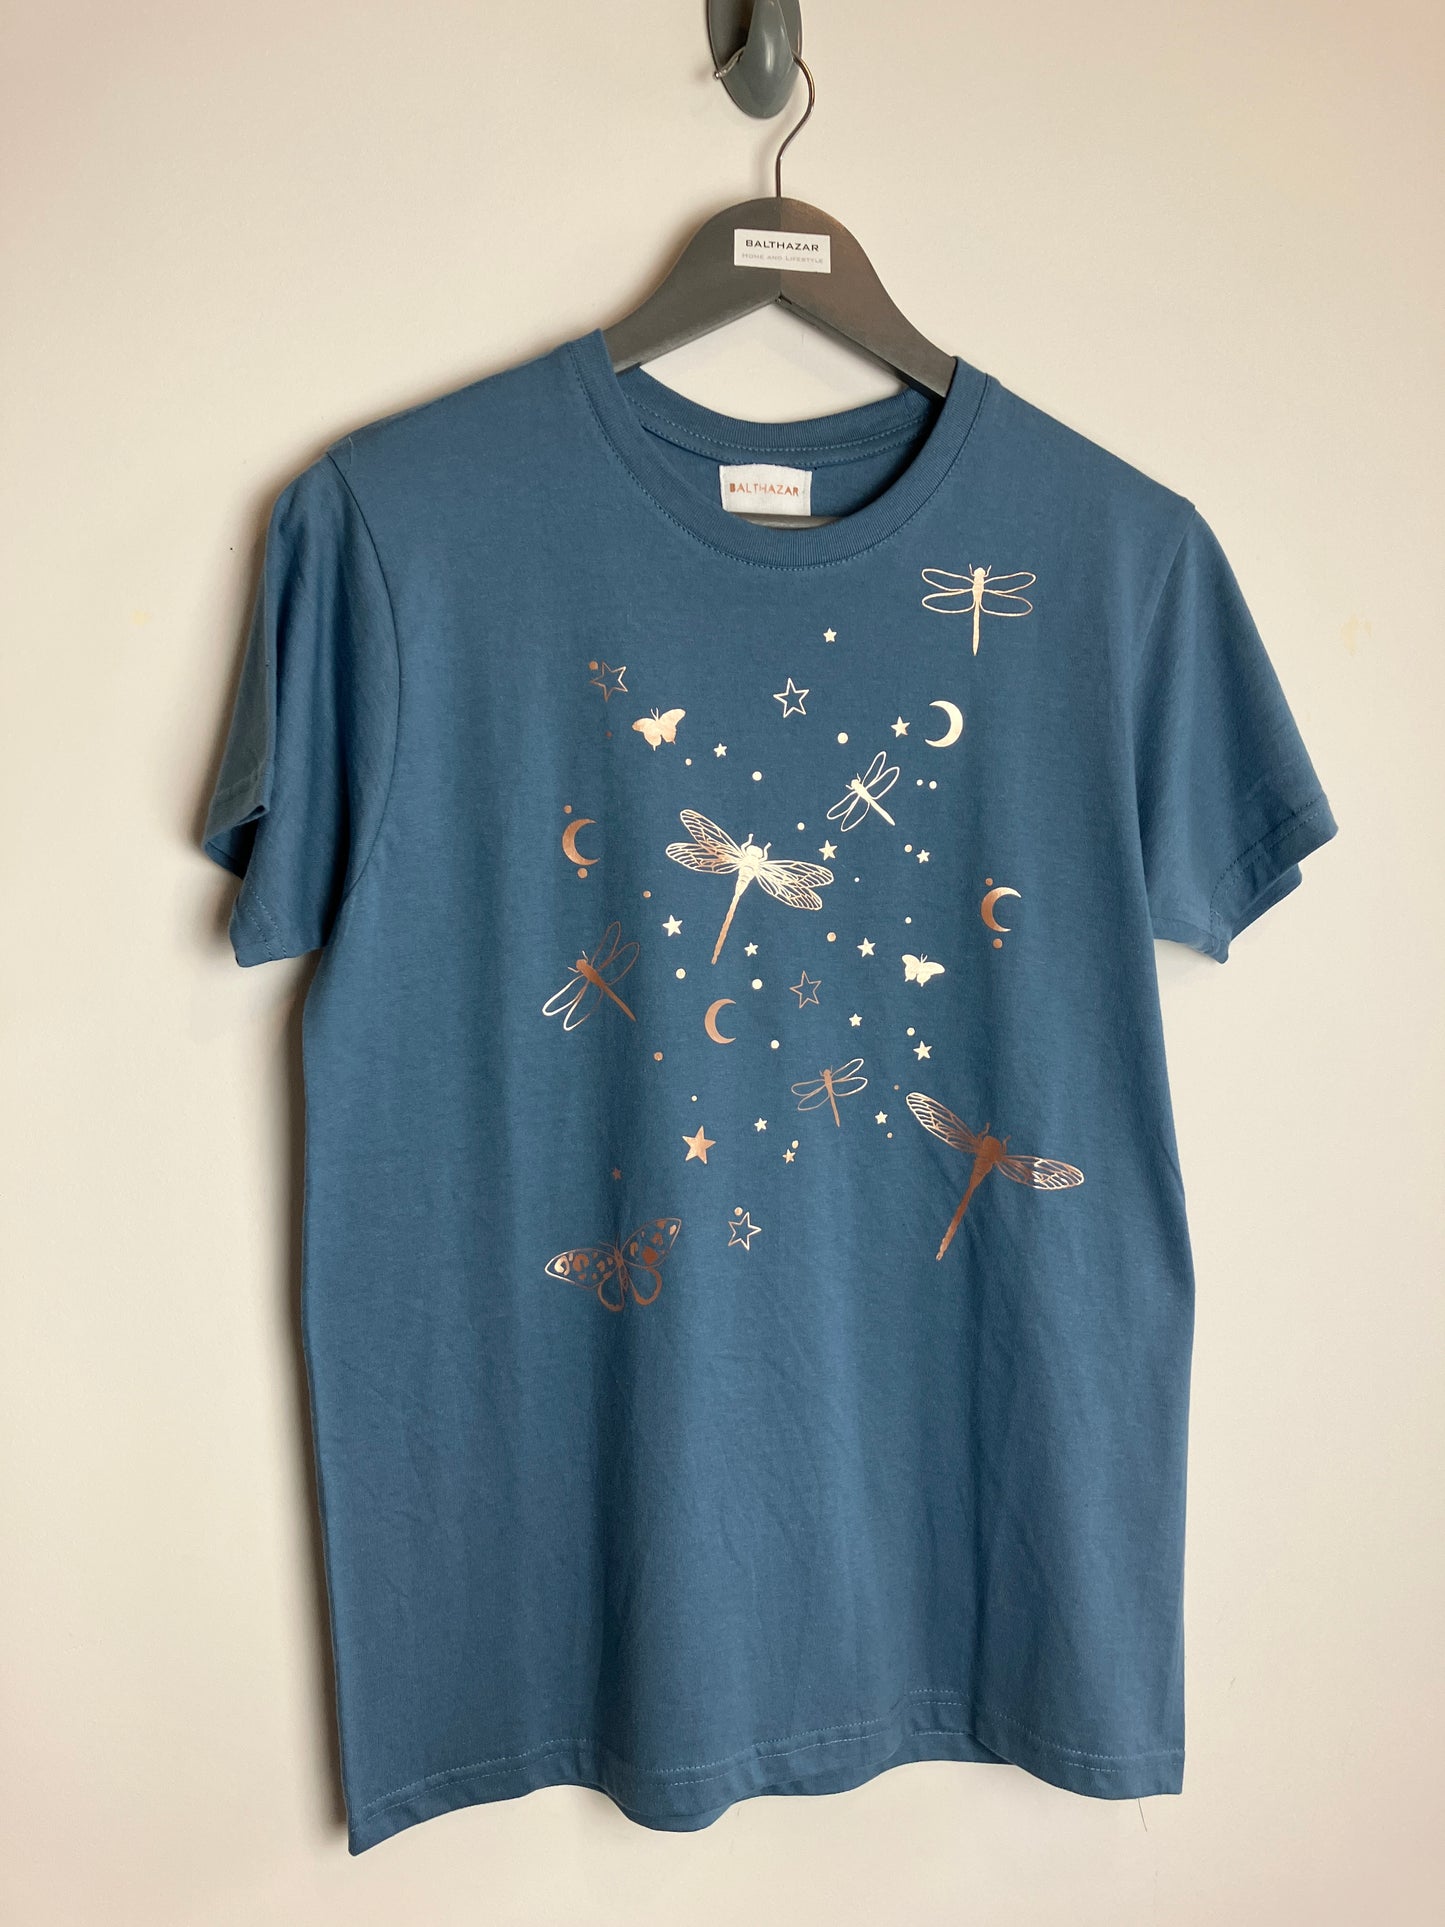 Midnight garden t-shirt - customisable